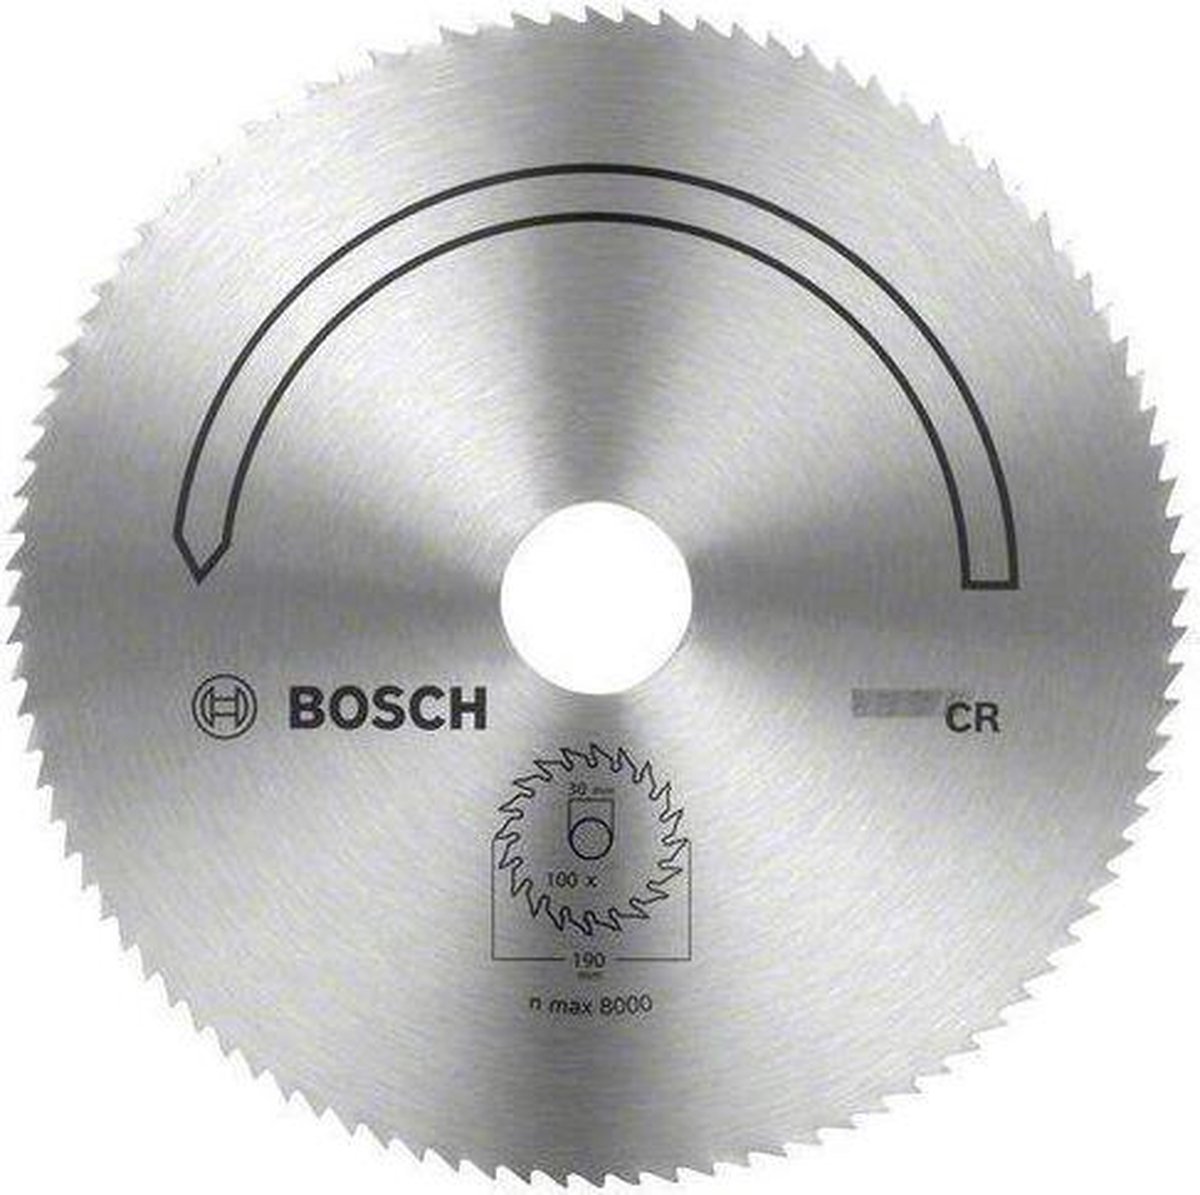 Bosch CR 150 16 x 2 mm |